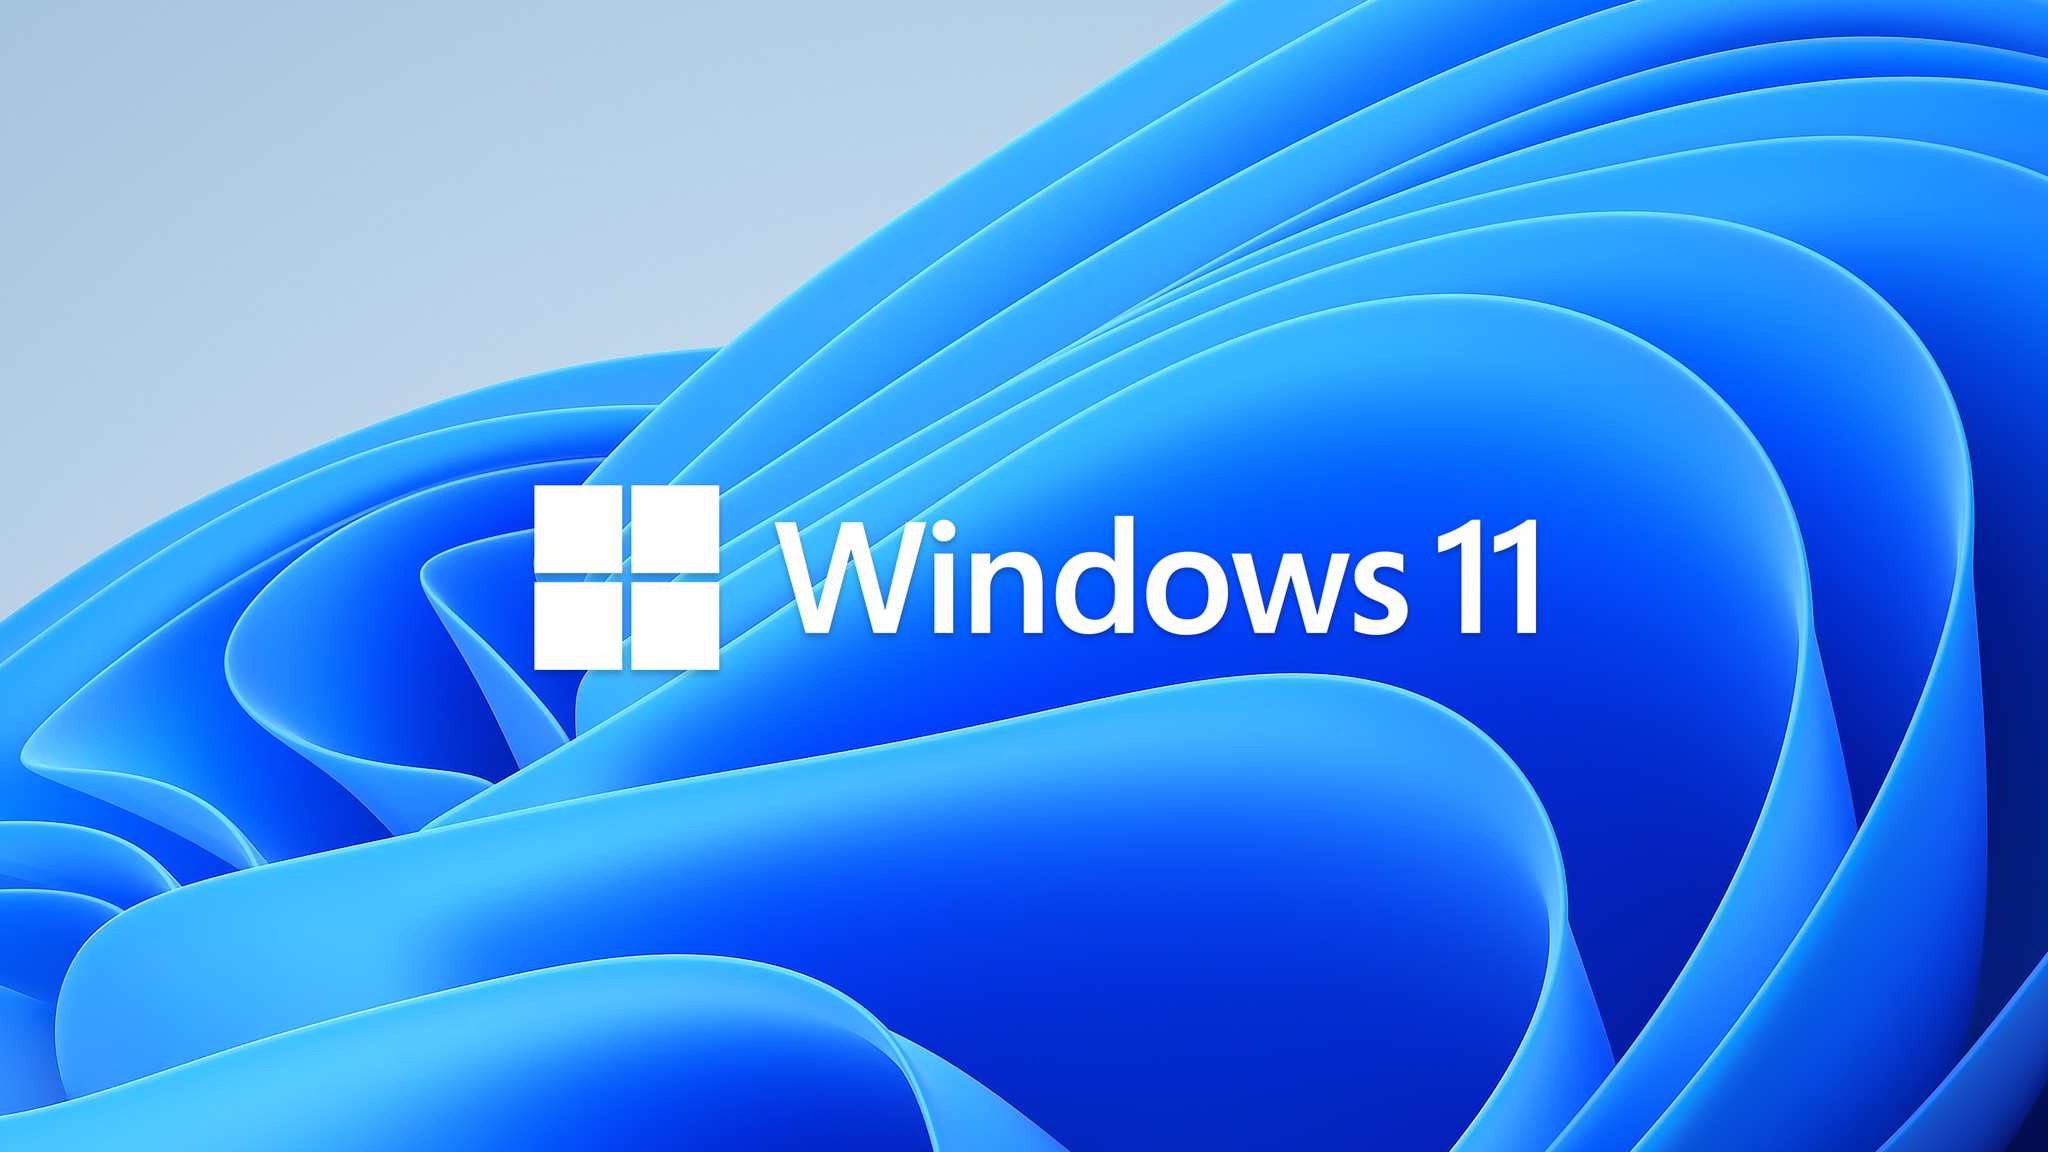 Microsoft chính thức giới thiệu Windows 11, giao diện mới, hỗ trợ ứng dụng Android